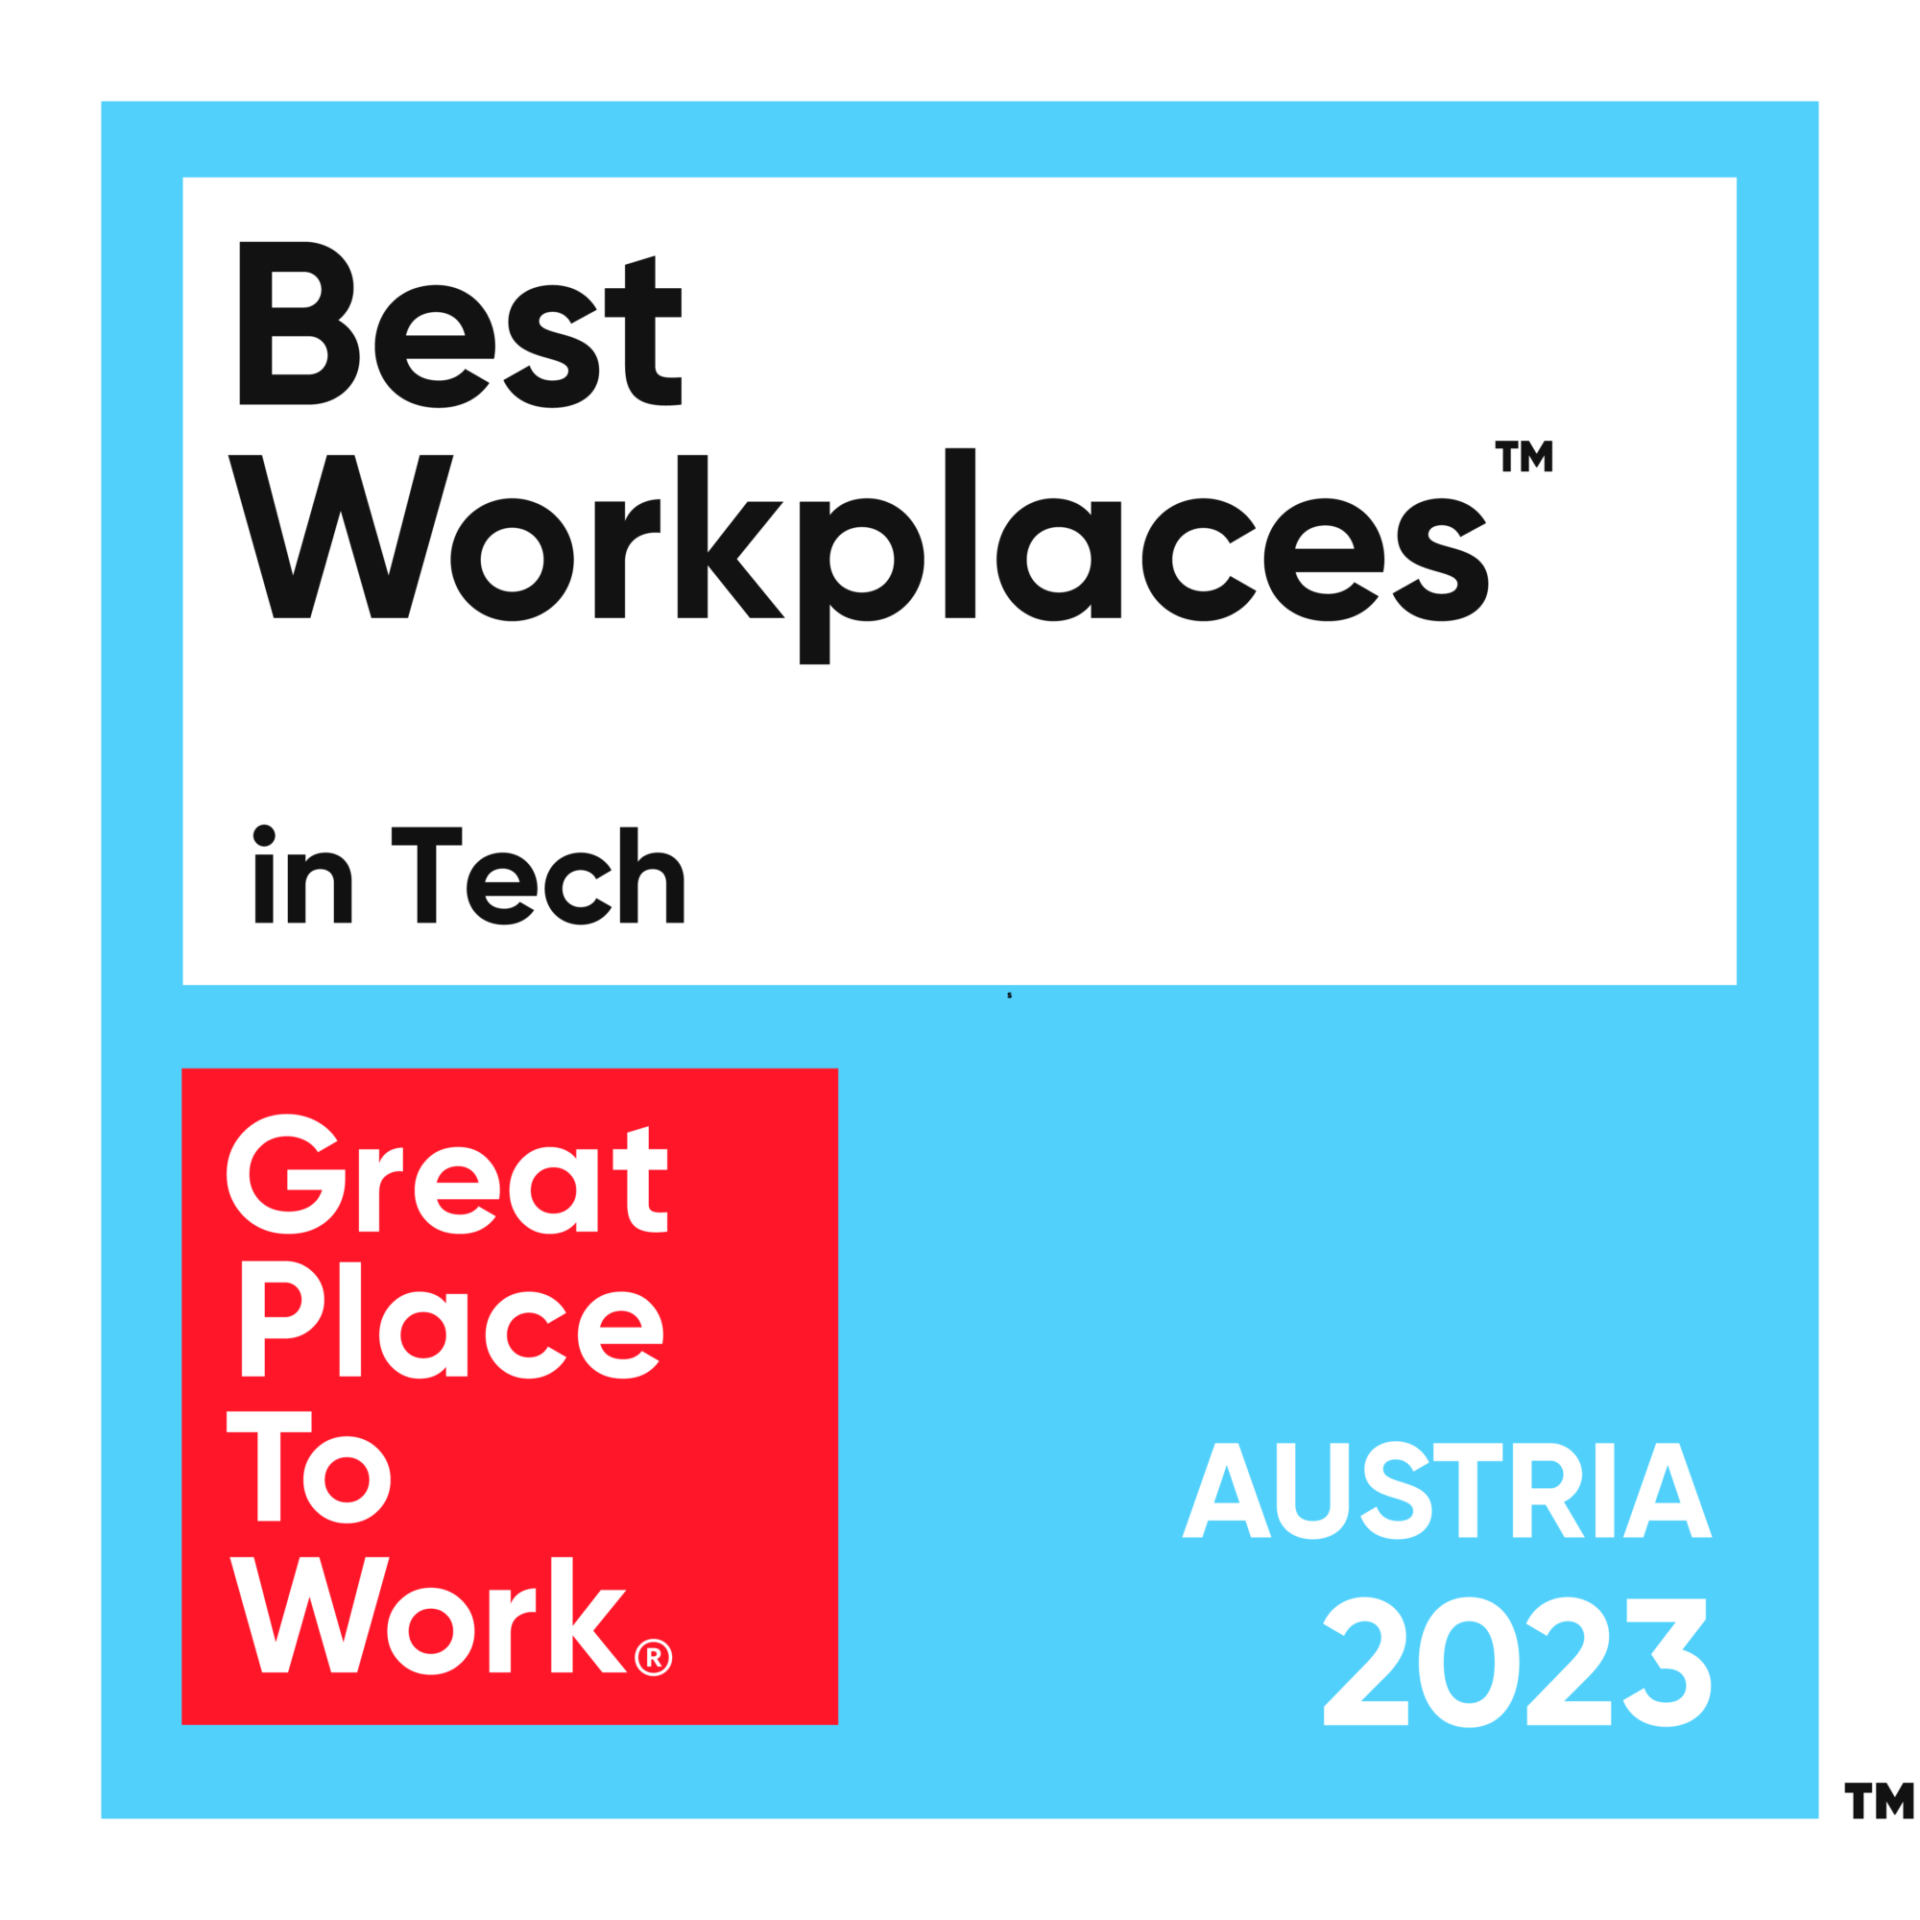 Meilleure entreprise technologique où travailler 2023 - Autriche